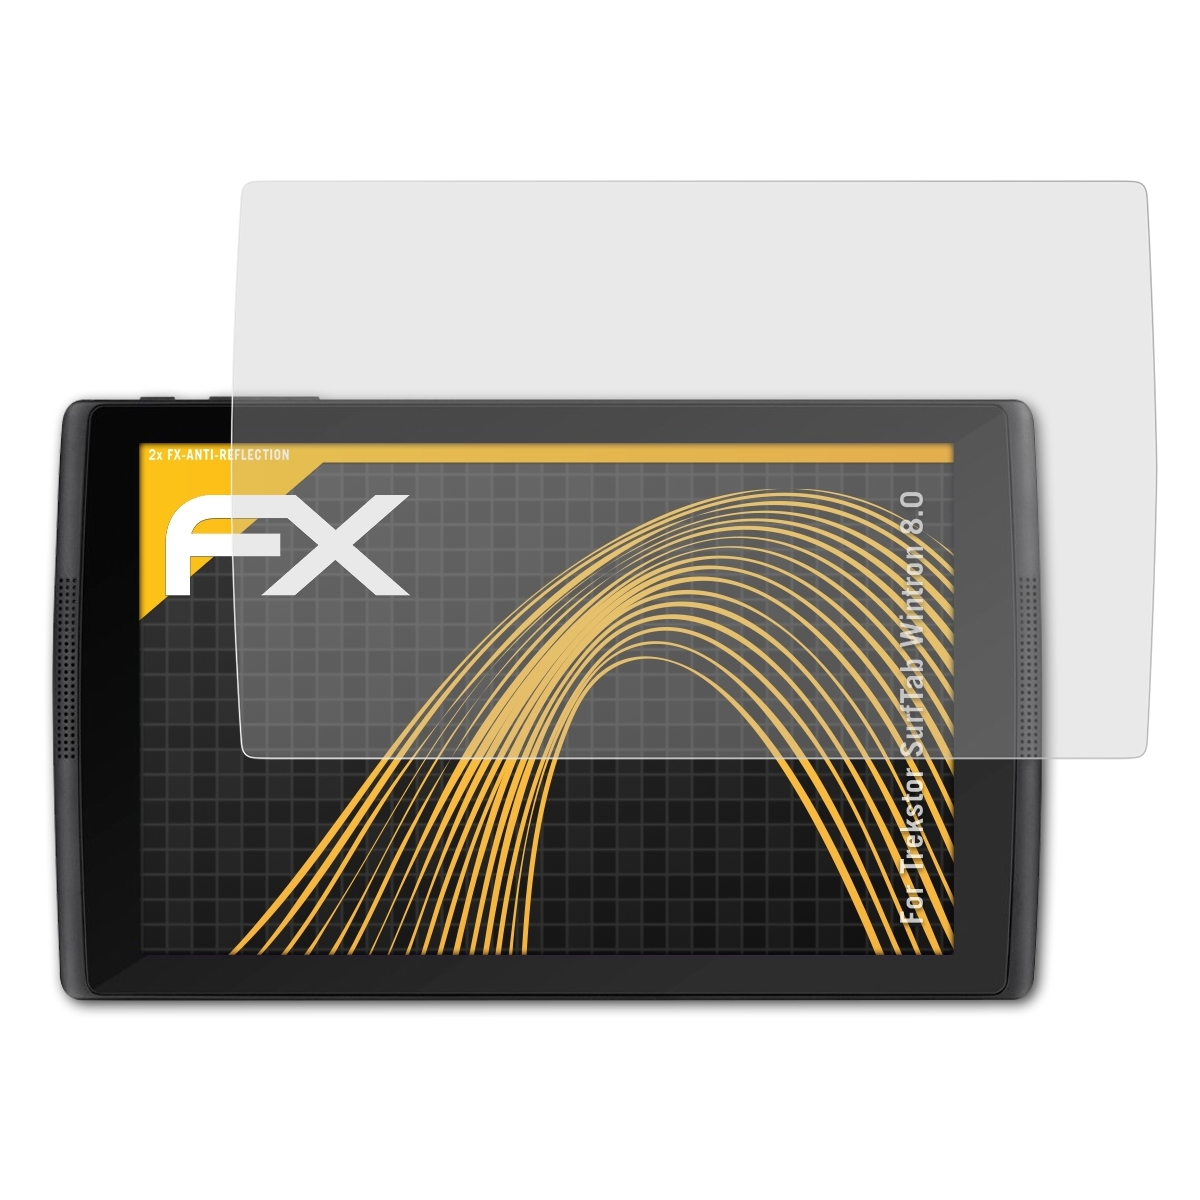 2x FX-Antireflex Displayschutz(für Wintron ATFOLIX 8.0) SurfTab Trekstor